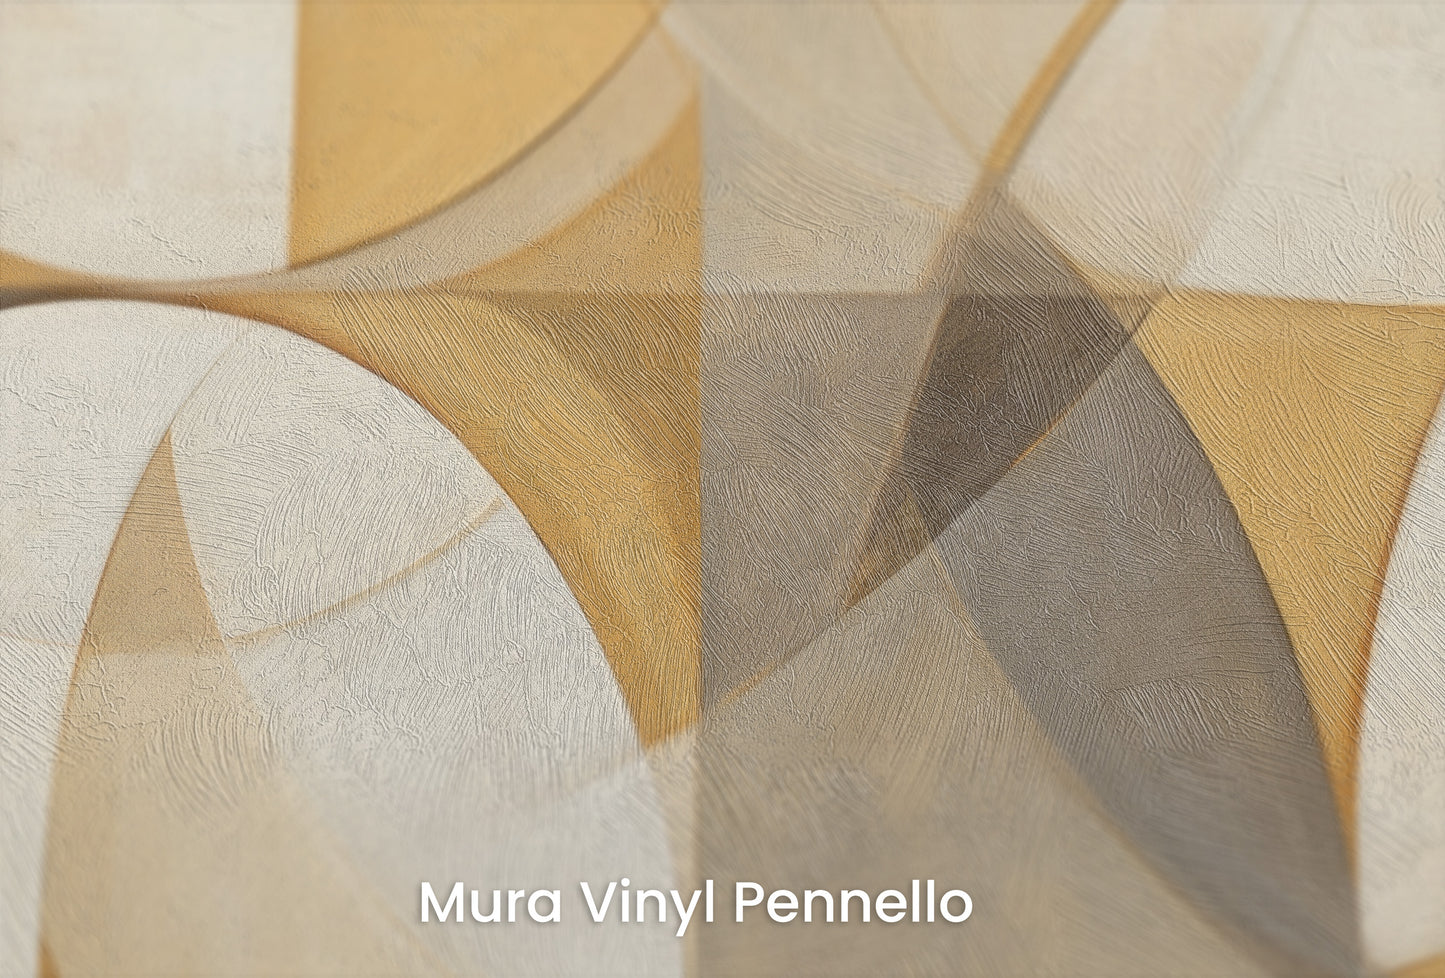 Zbliżenie na artystyczną fototapetę o nazwie INTERSECTING TRANQUILITY na podłożu Mura Vinyl Pennello - faktura pociągnięć pędzla malarskiego.